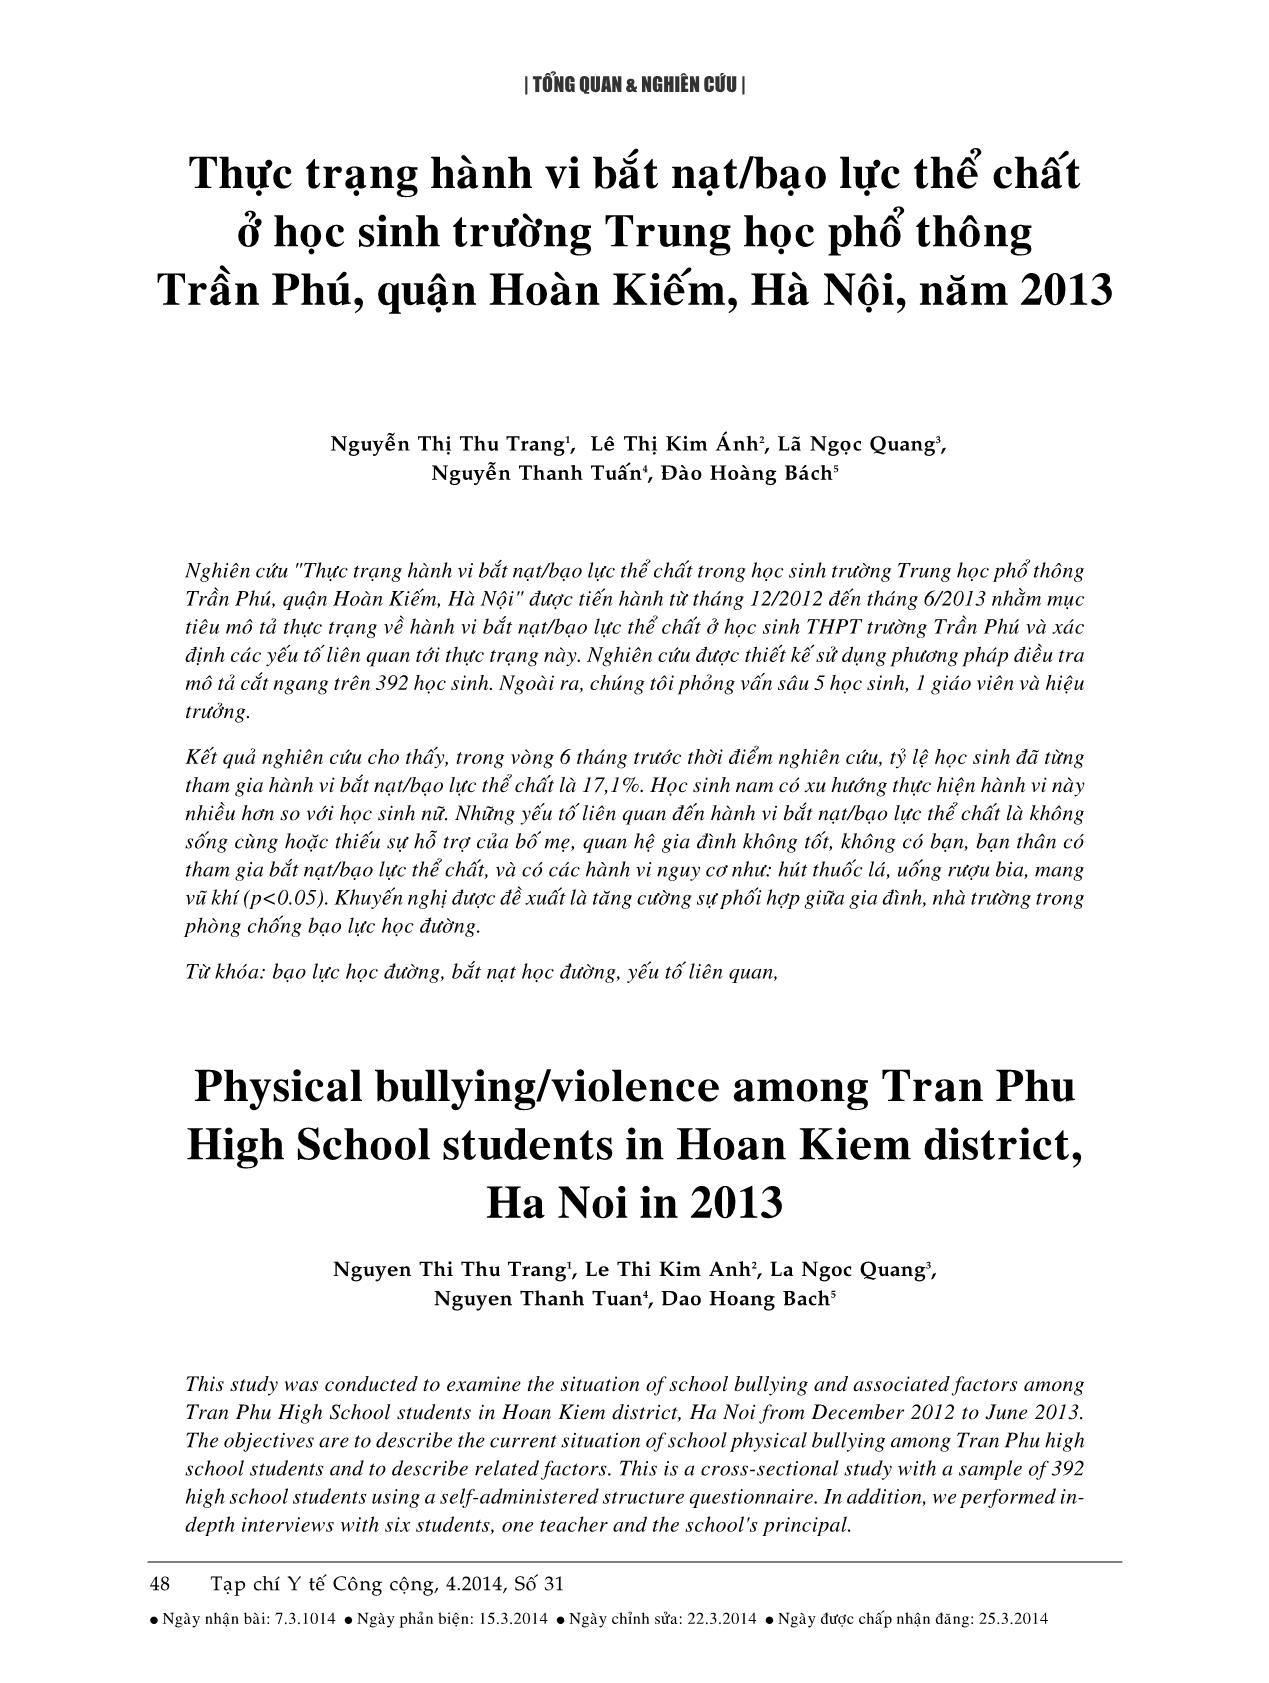 Thực trạng hành vi bắt nạt/bạo lực thể chất ở học sinh trường Trung học phổ thông Trần Phú, quận Hoàn Kiếm, Hà Nội, năm 2013 trang 1